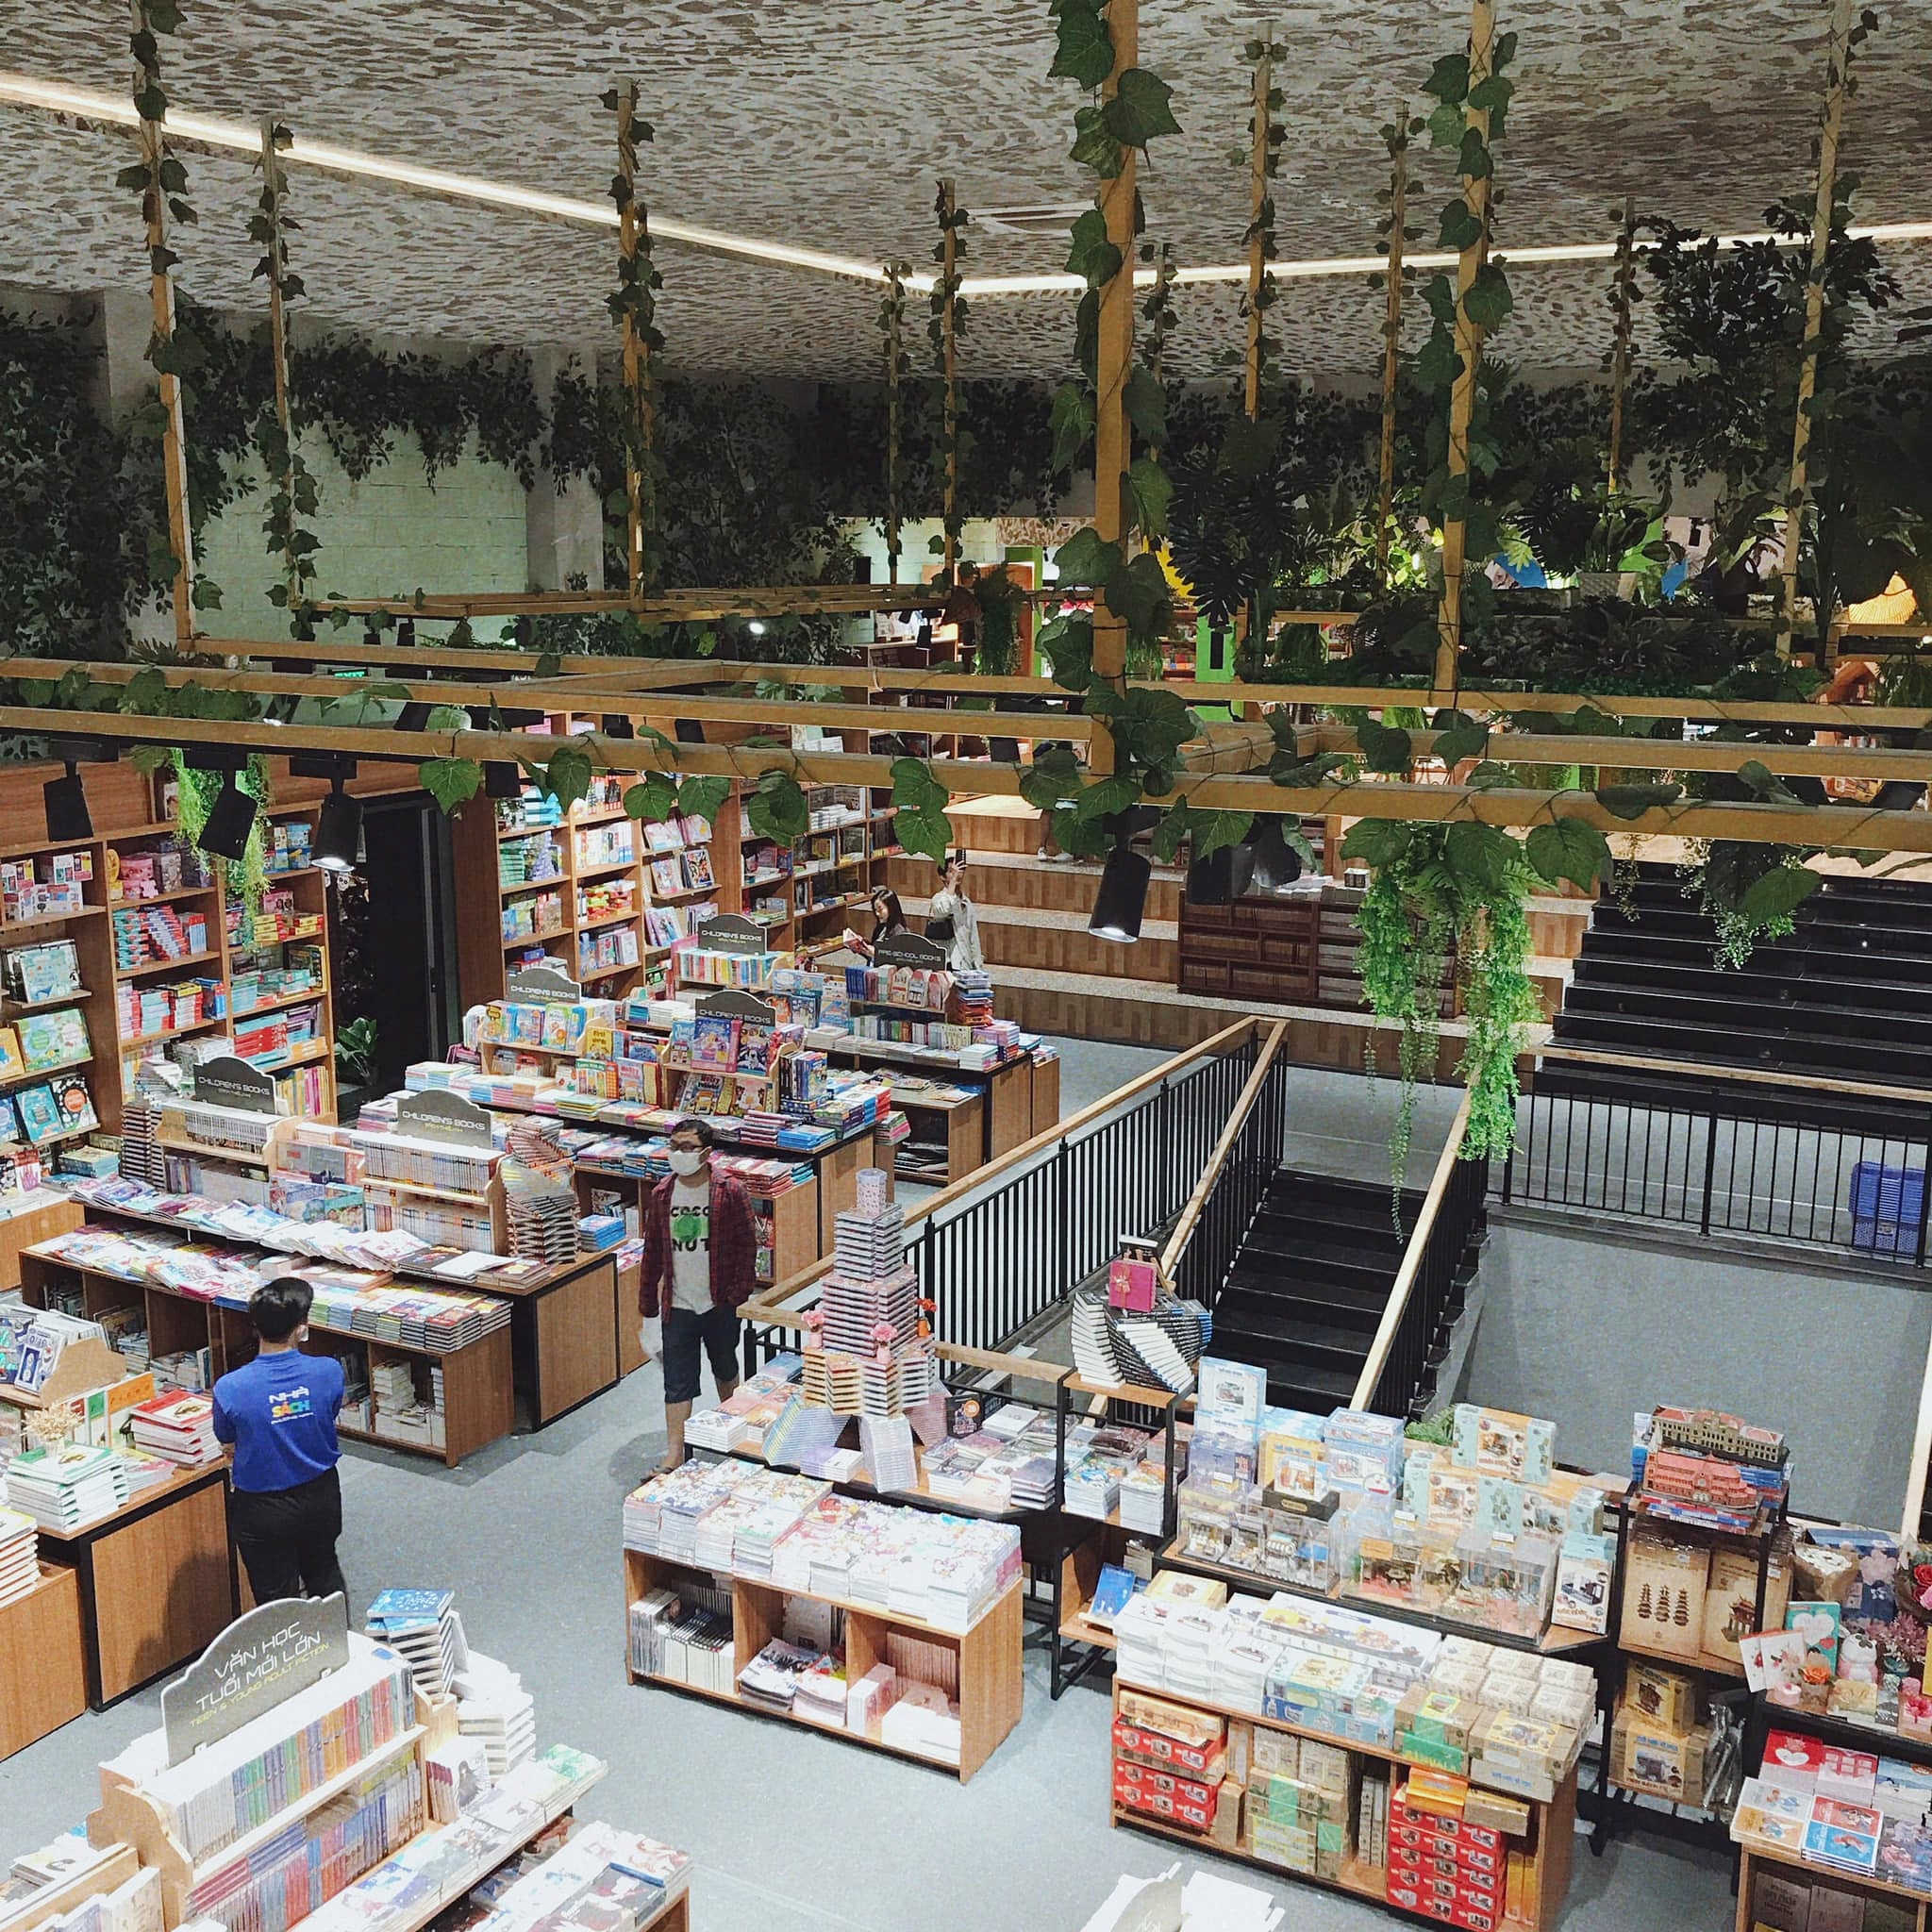 Ghé thăm nơi được giới trẻ mệnh danh là "nhà sách đẹp nhất Sài Gòn", rộng thênh thang với những góc xanh mát xinh xắn đáng ngạc nhiên - Ảnh 3.